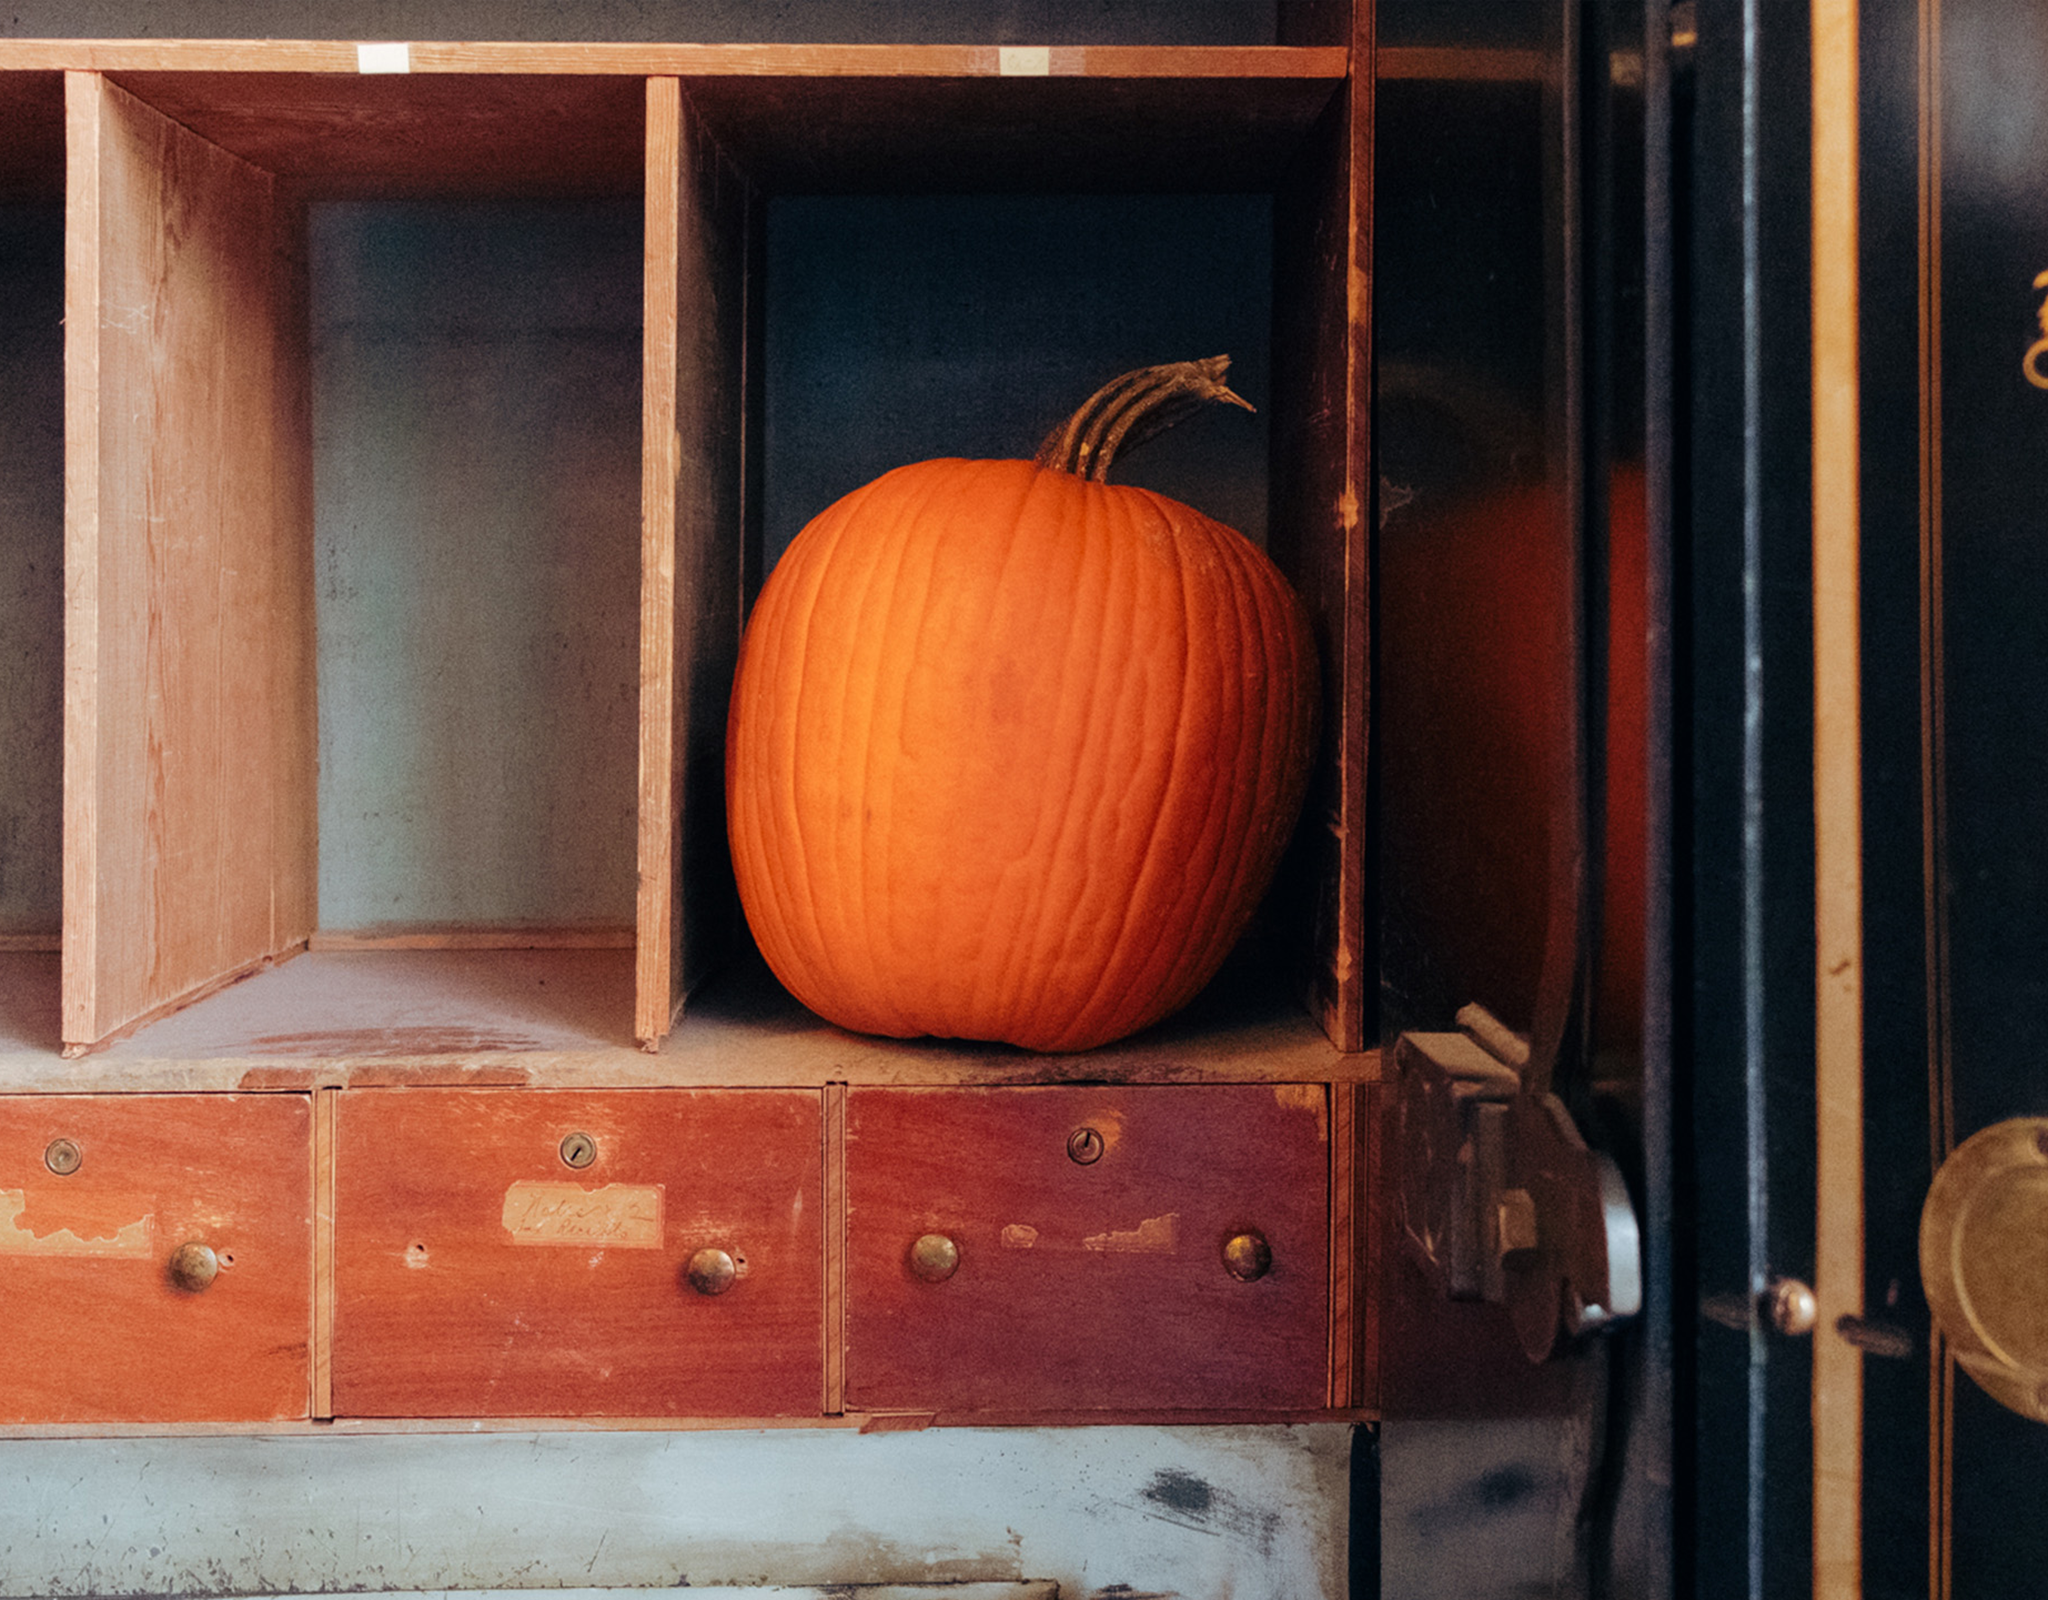 A pumpkin sits on an old shelf.